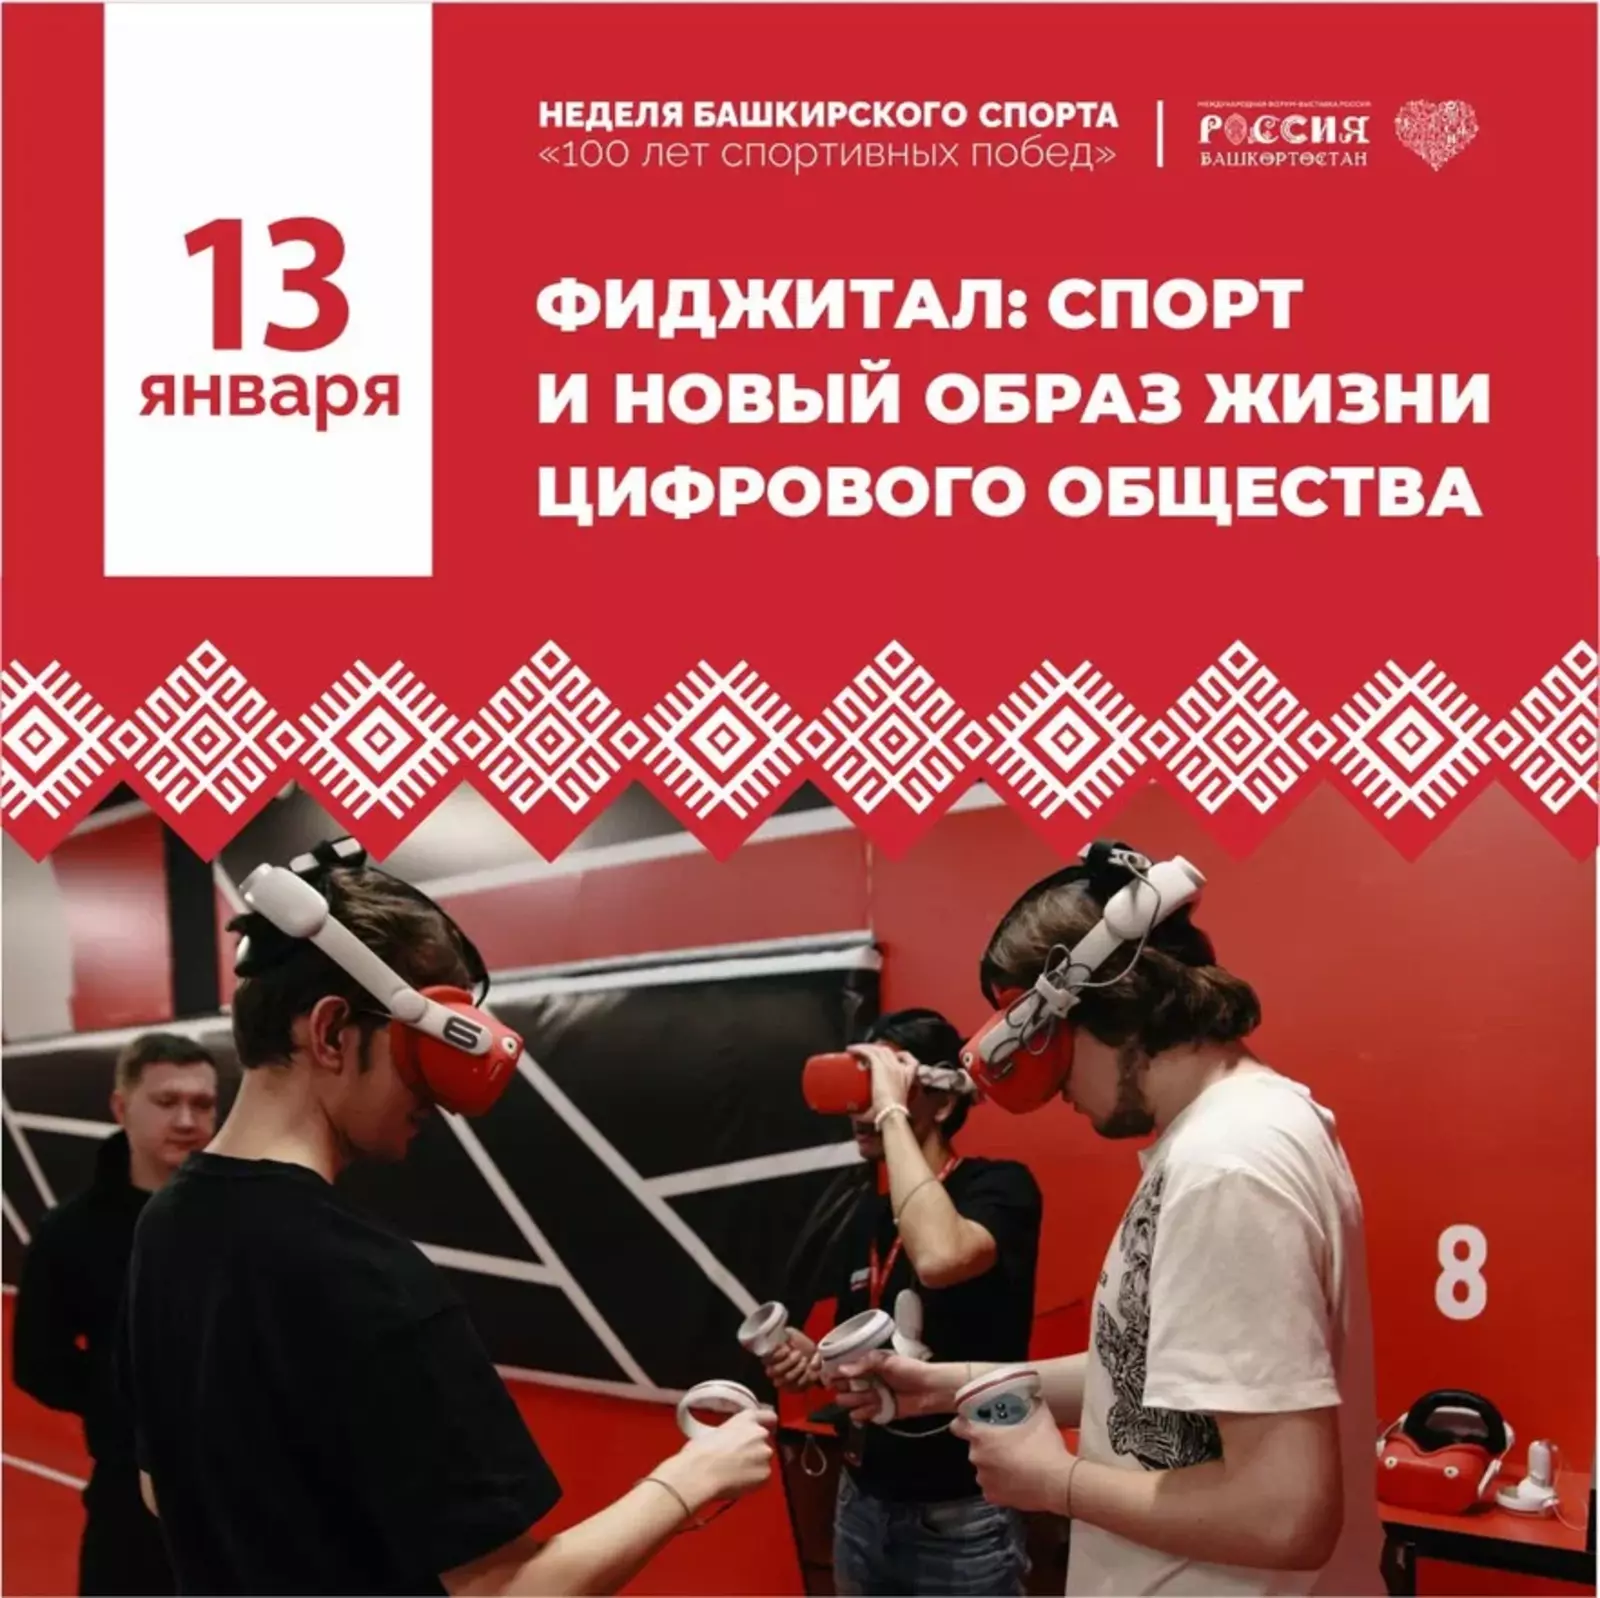 Неделя башкирского спорта на форуме "Россия"